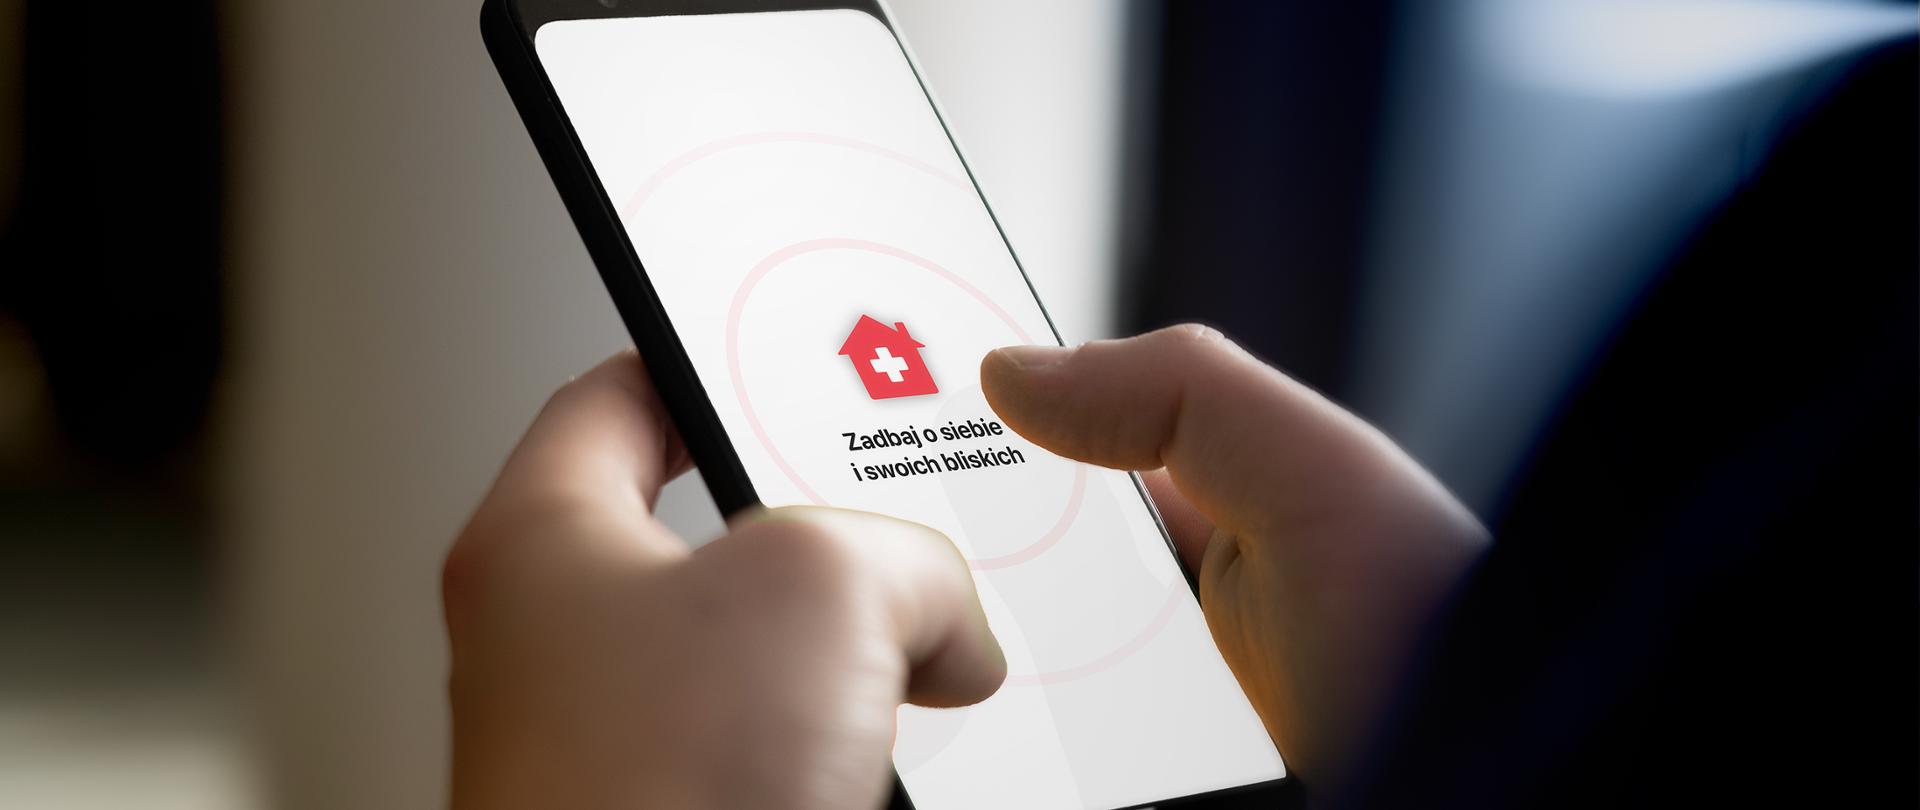 Smartfon w dłoniach - bliskie ujęcie. Na ekranie ikona domku z białym krzyżykiem i napis: Zadbaj o siebie i swoich bliskich